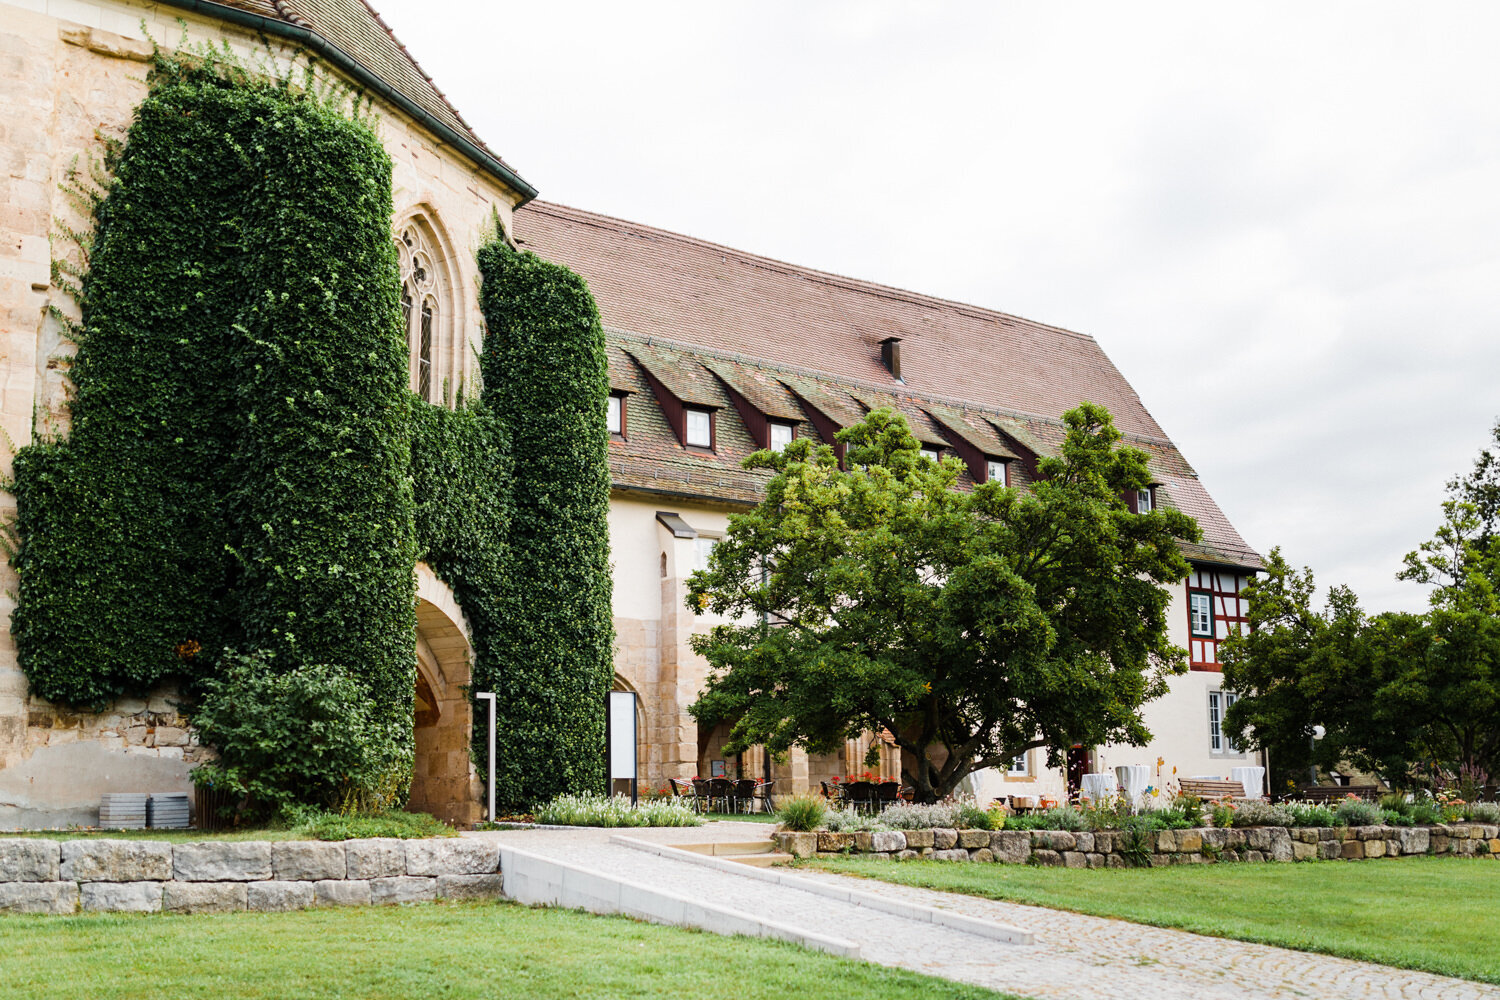 Kloster  Lorch als Location für die Hochzeitsfeier